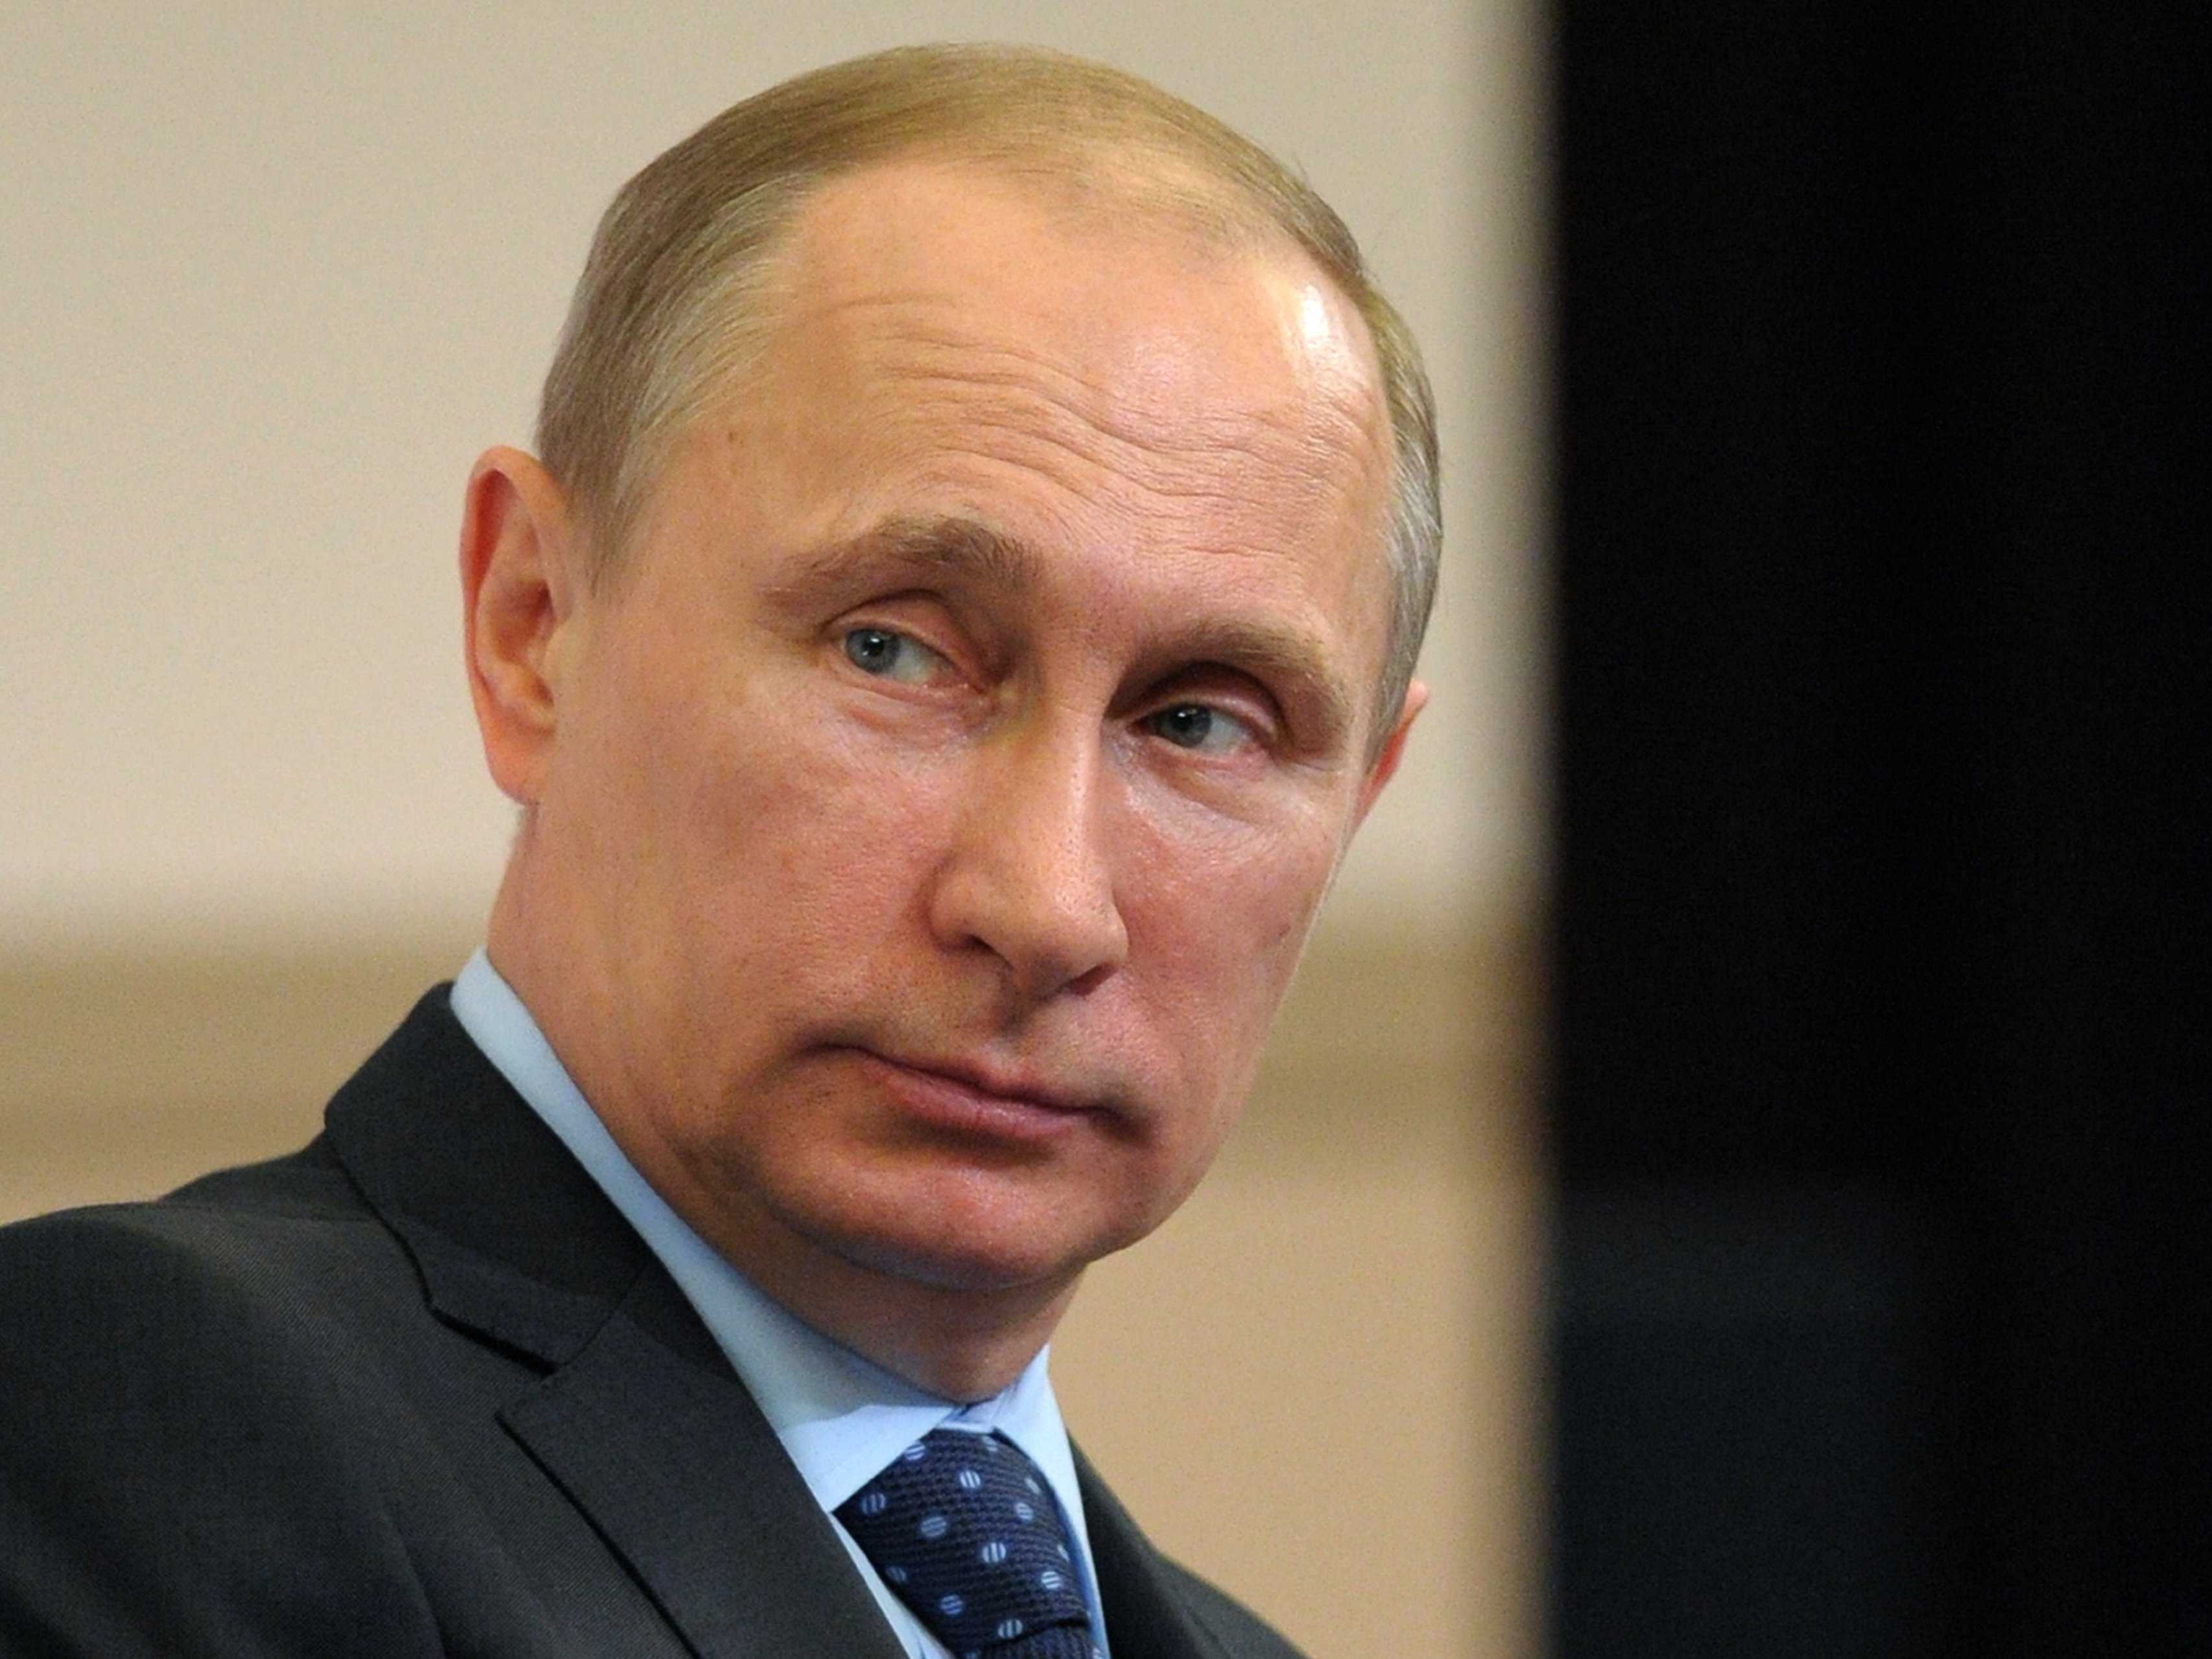 Göteborgs-Posten: Путин включил Ближний Восток в российскую сферу влияния